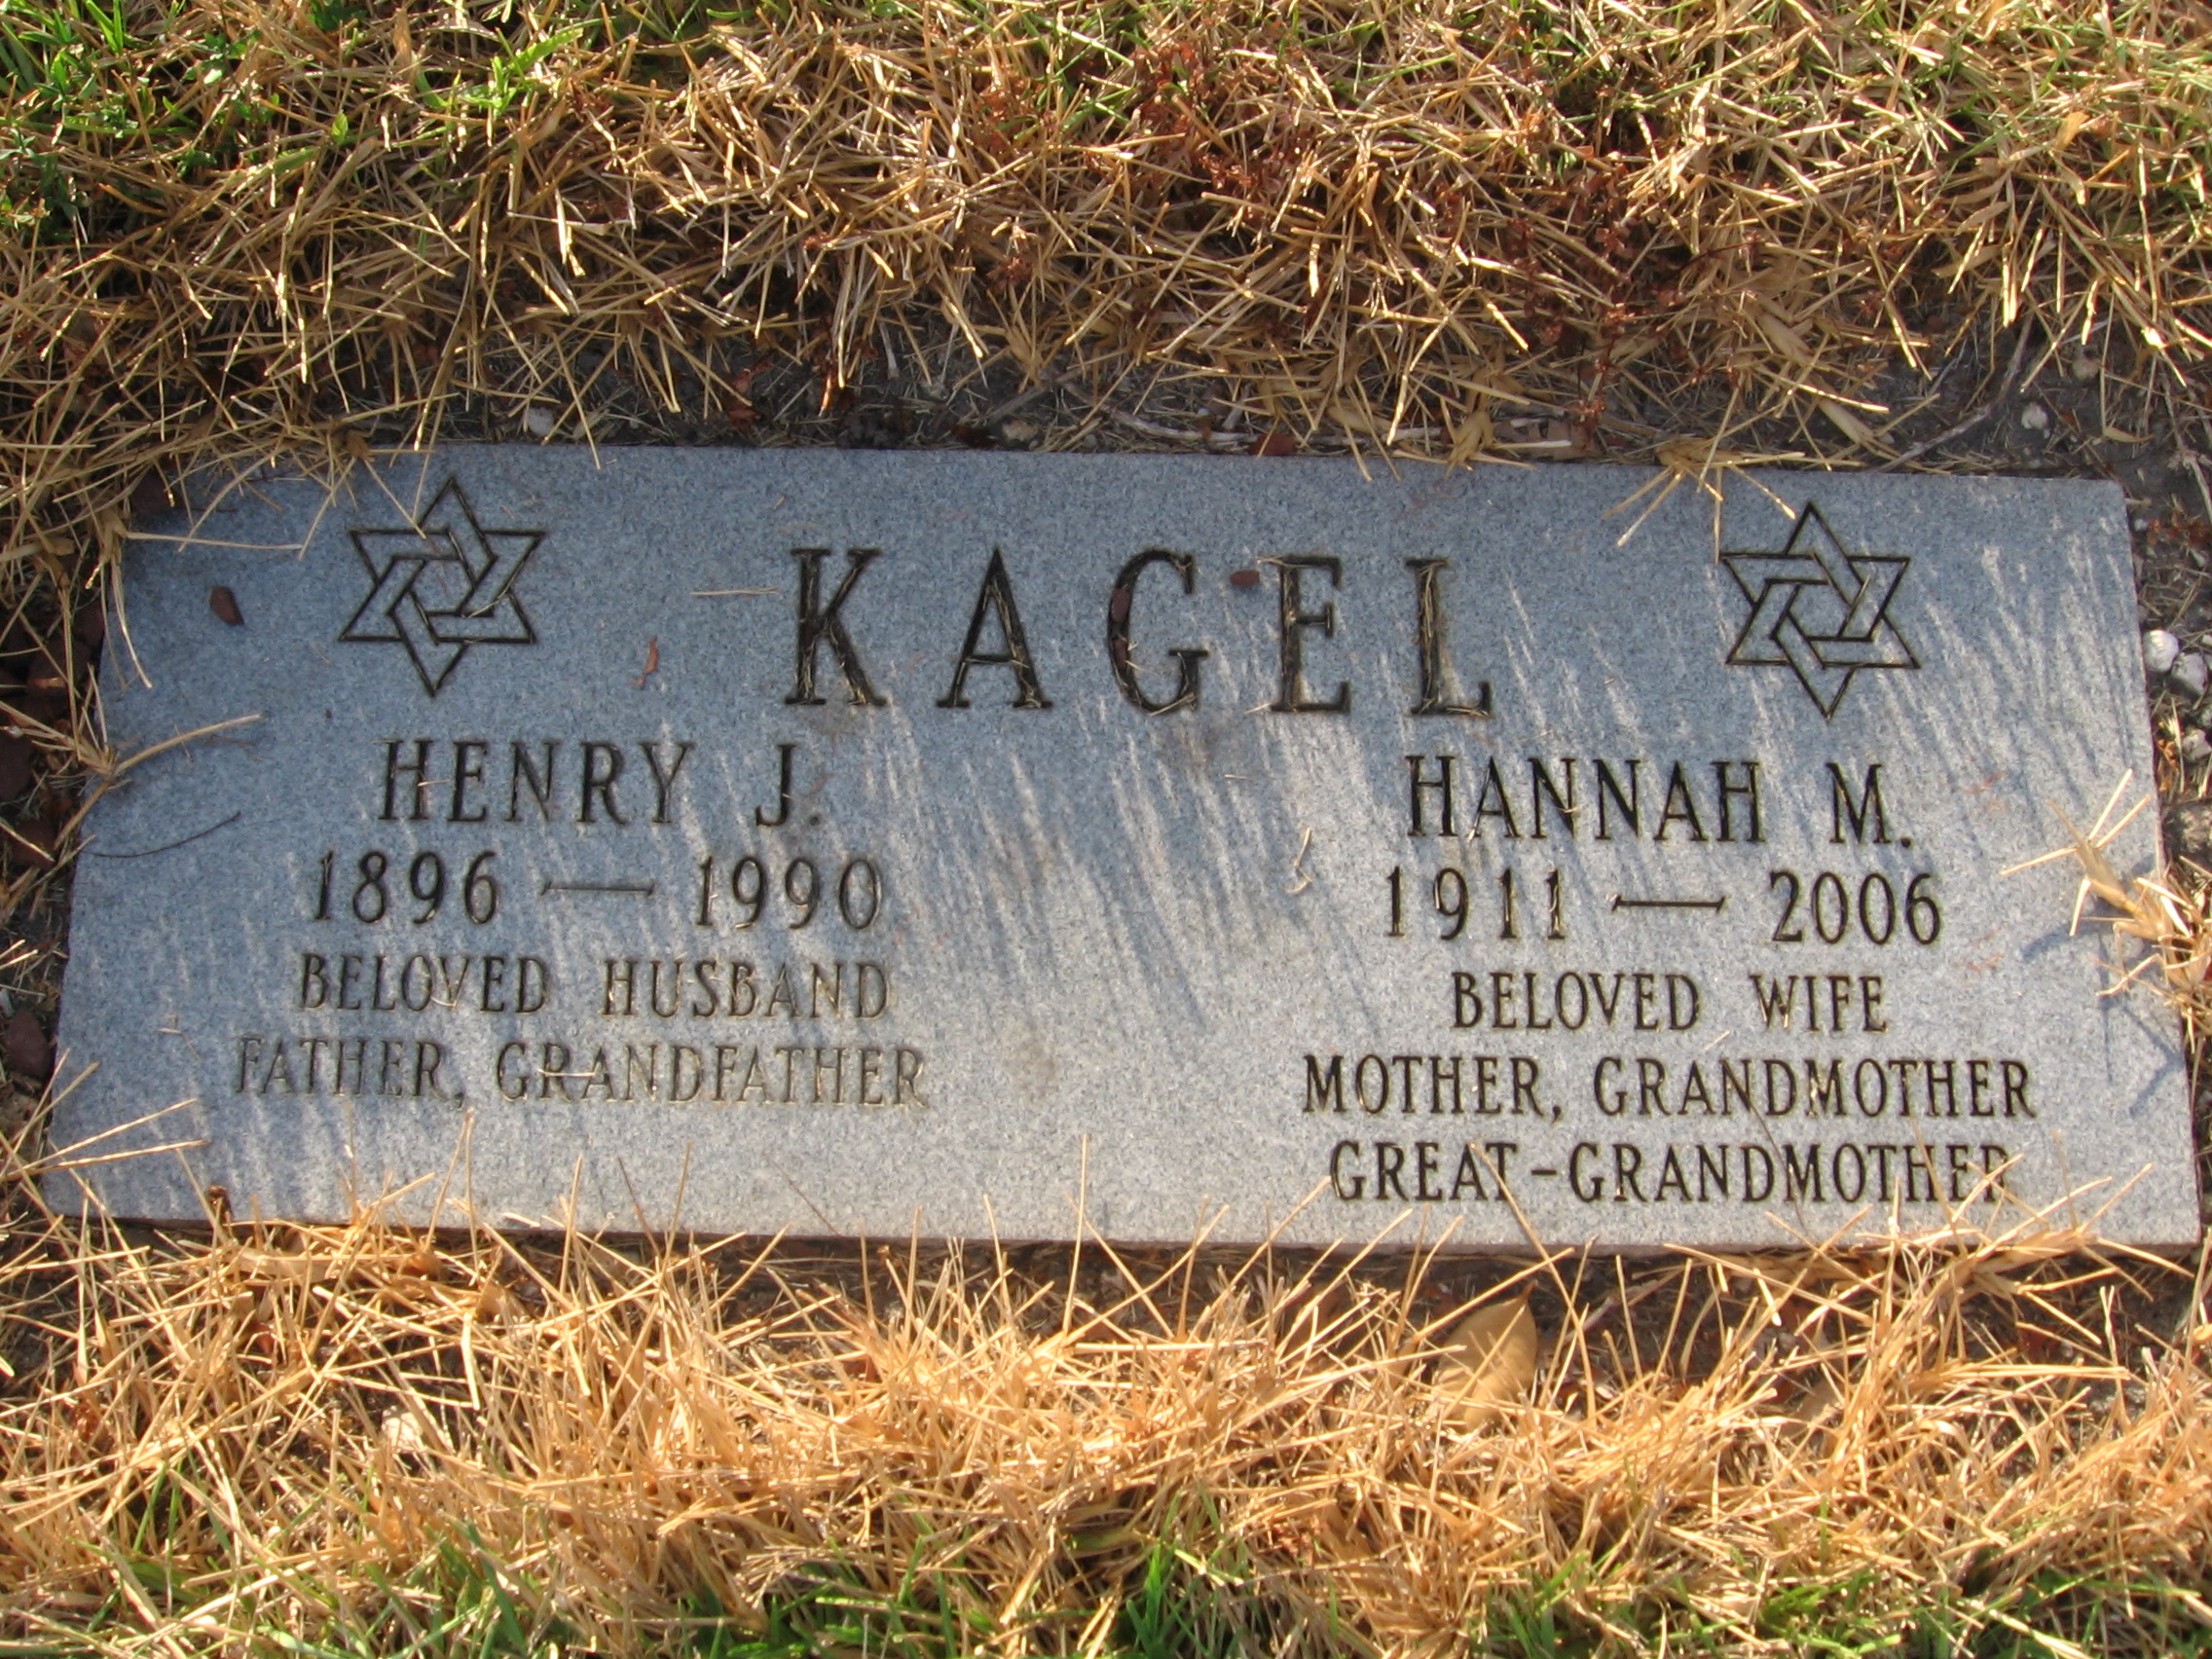 Henry J Kagel